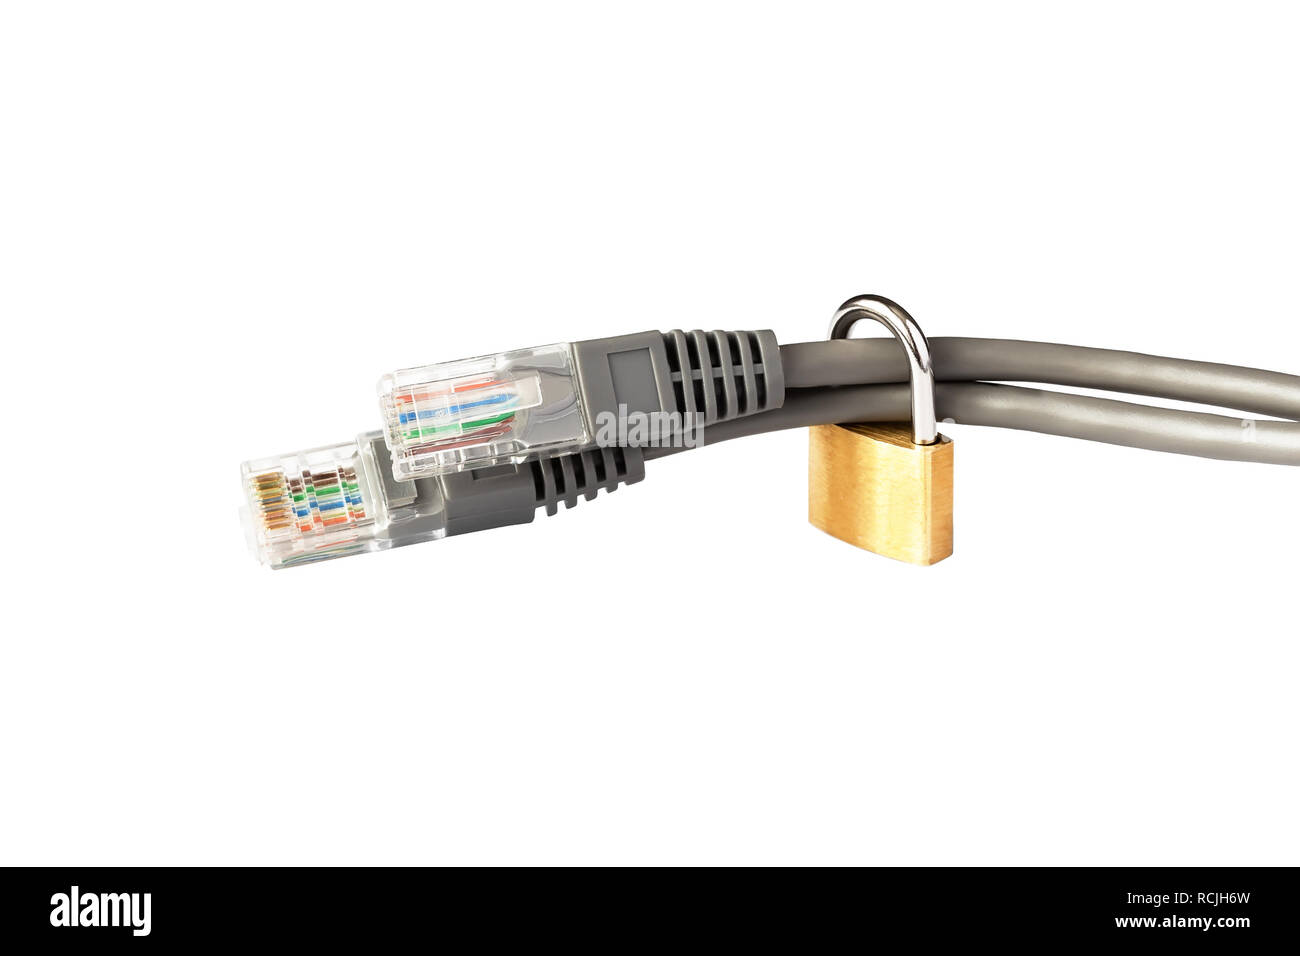 Zwei Ethernet Kabel mit RJ-45-Anschlüssen, mit einem Schloss gesichert. Das Konzept der Sicherheit, Datenschutz. Schutz von Informationen. Stockfoto